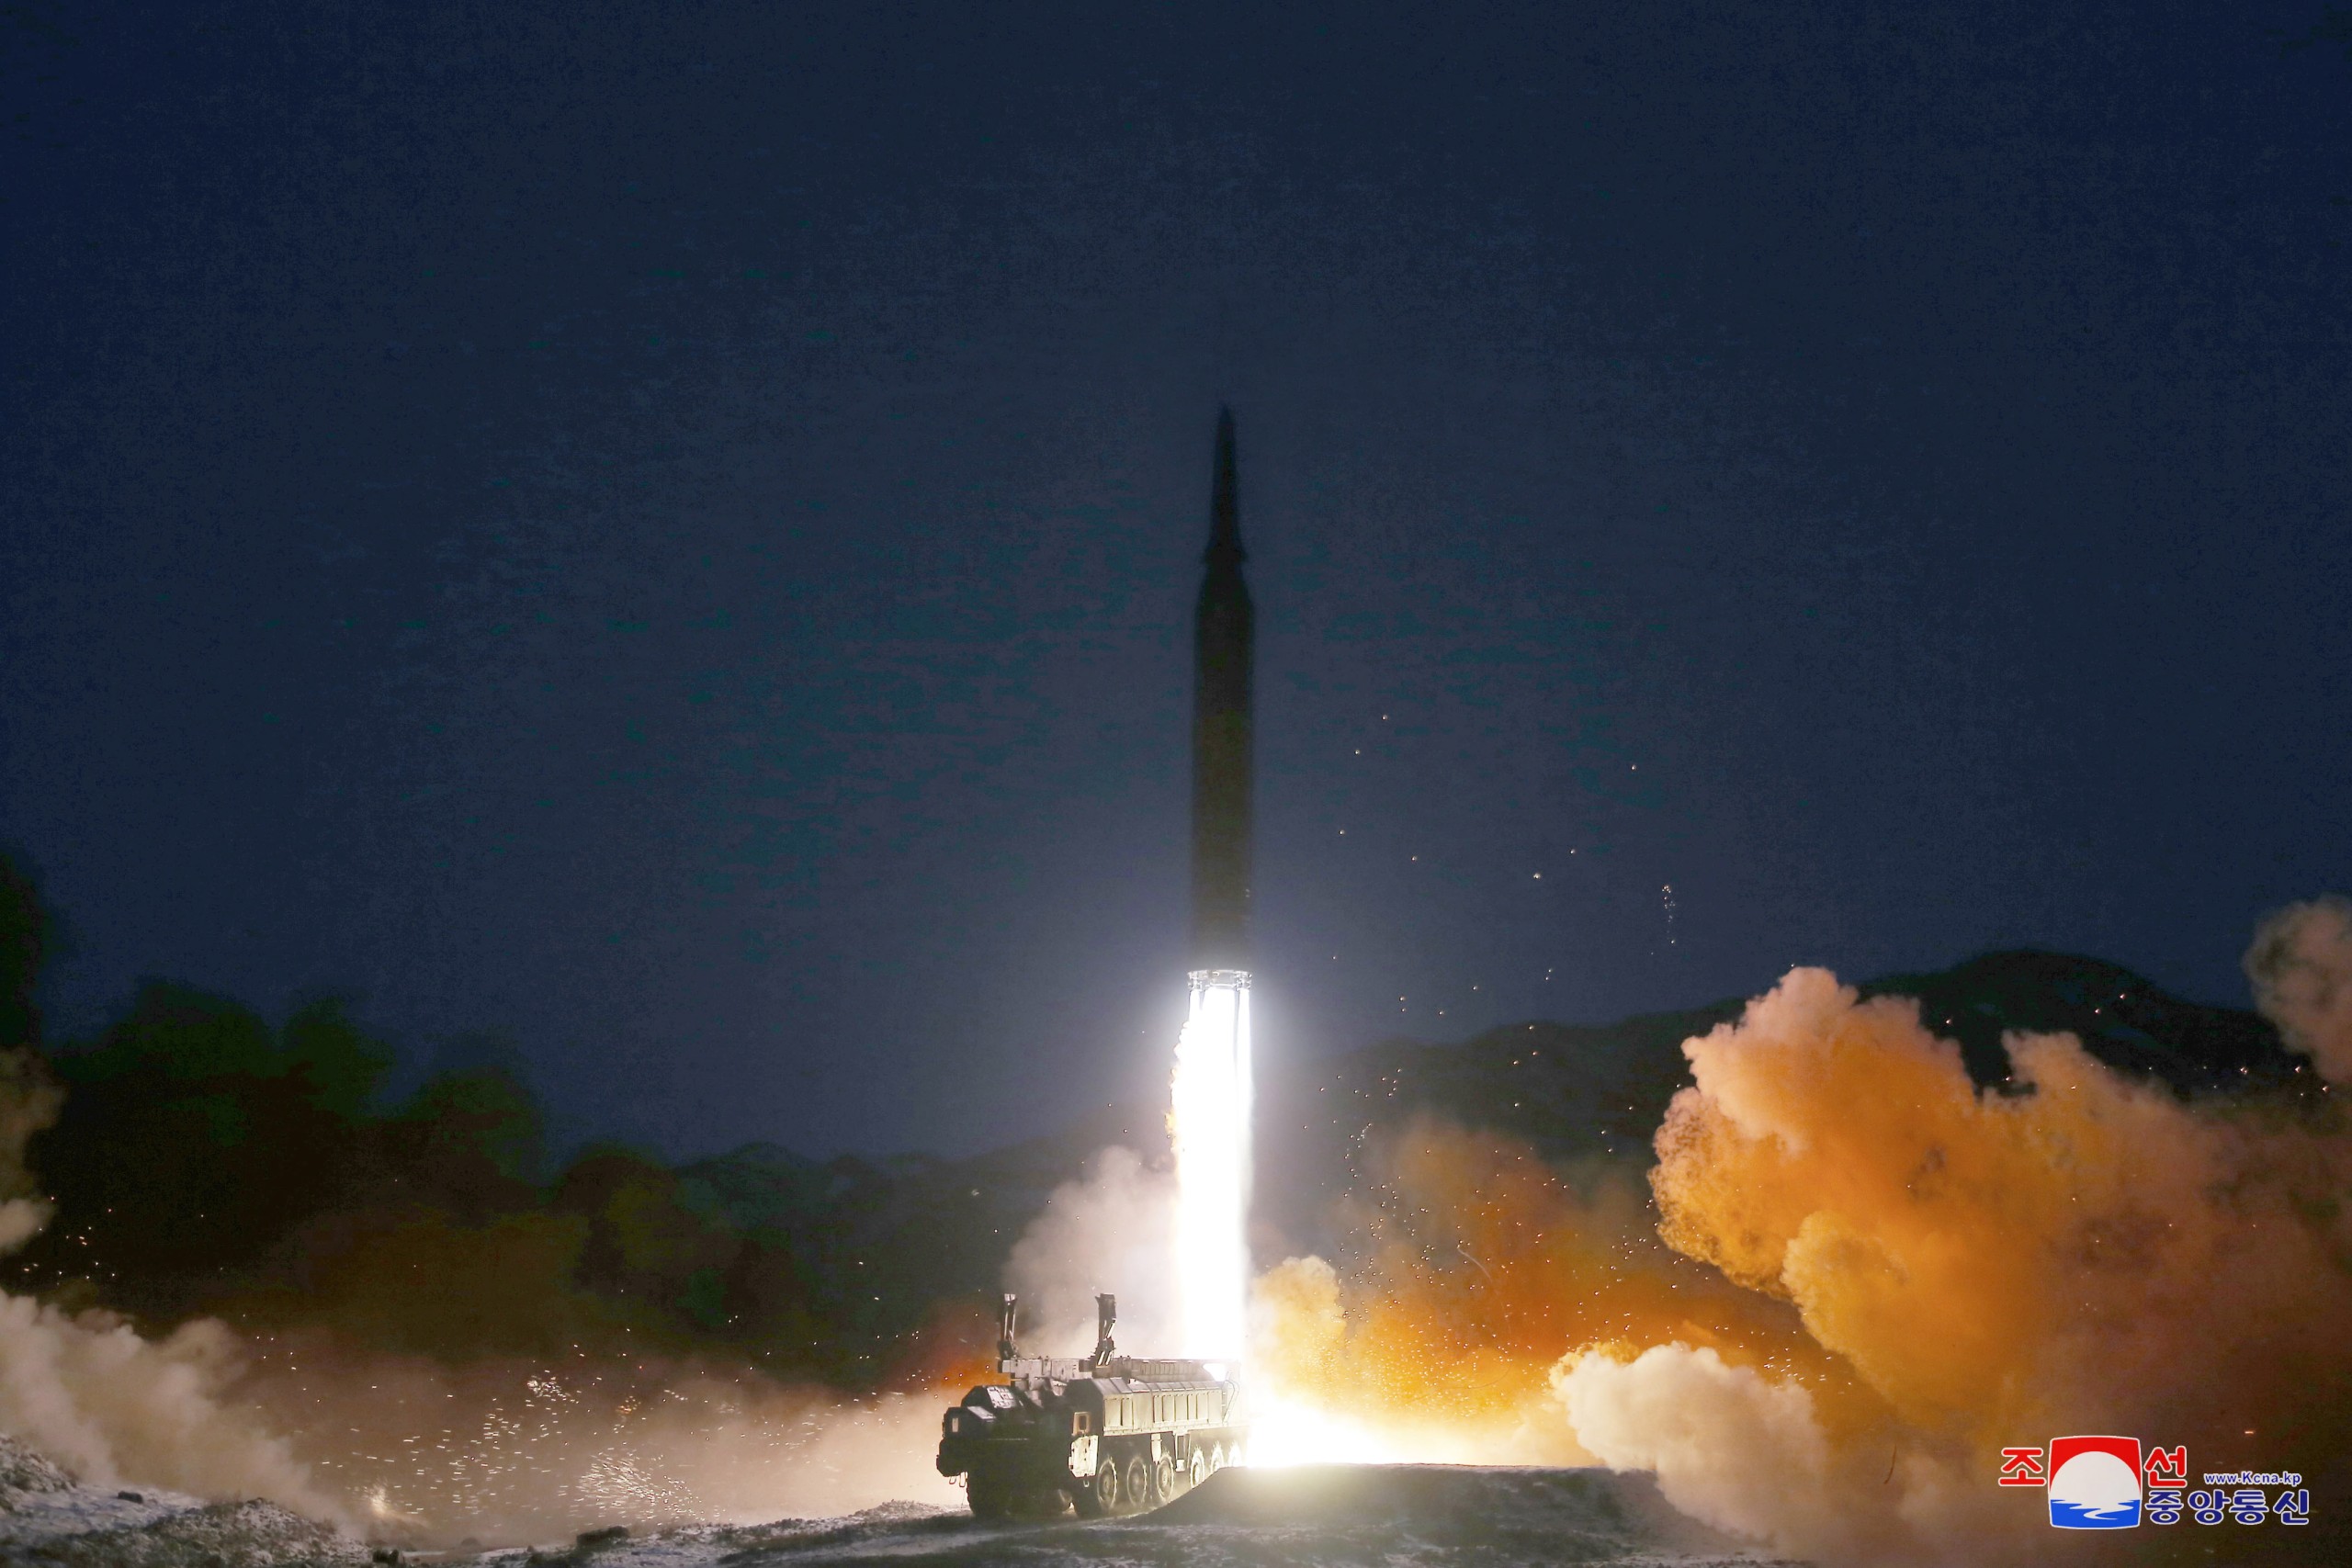 Sjeverna Koreja odgovorila na posljednje sankcije SAD-a novim ispaljivanjem projektila